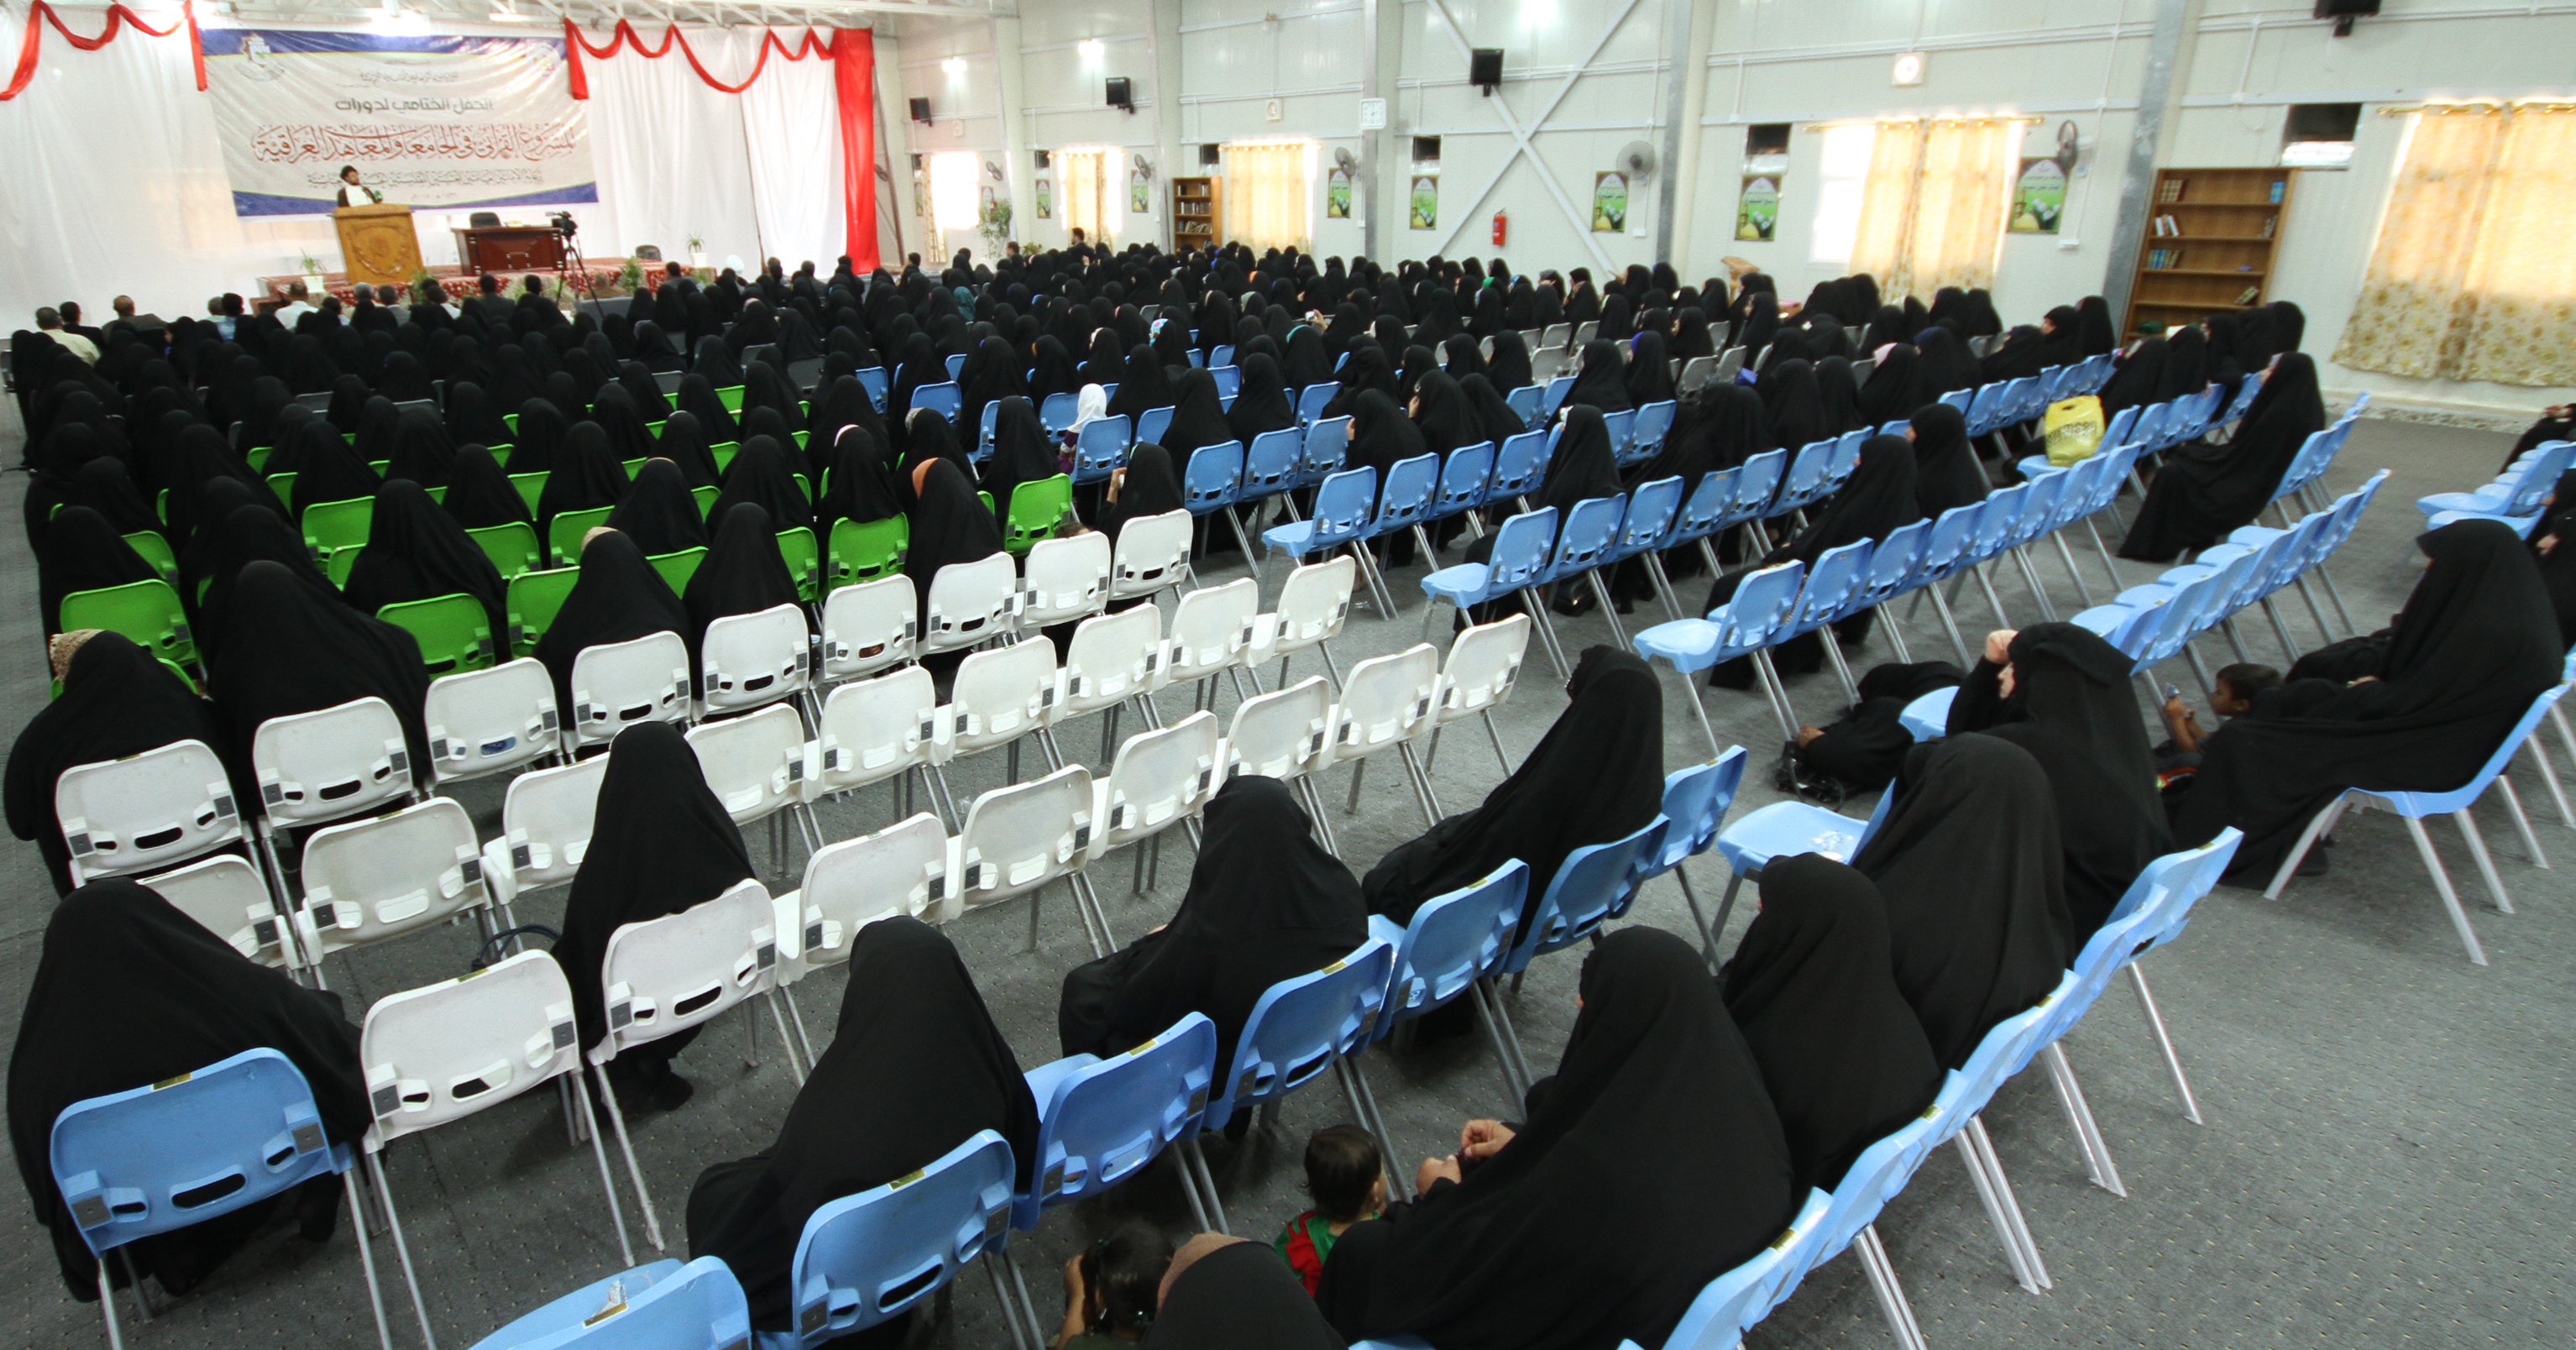 حفل ختام دورات المشروع القرآني في الجامعات والمعاهد العراقية.